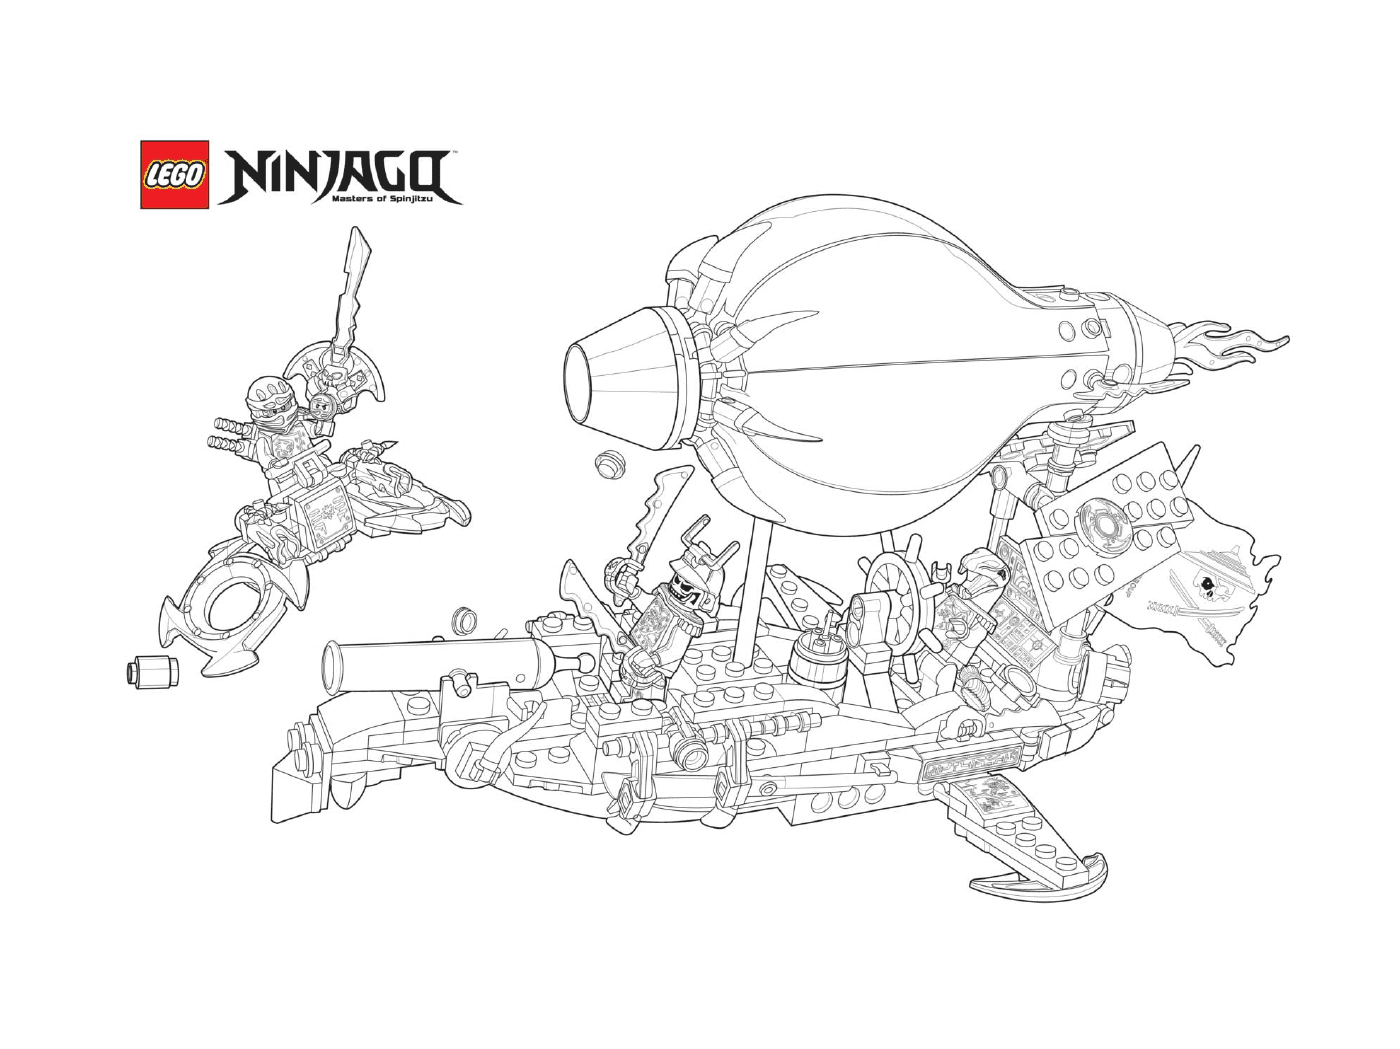  Ninjago vs. enemigos en barco 